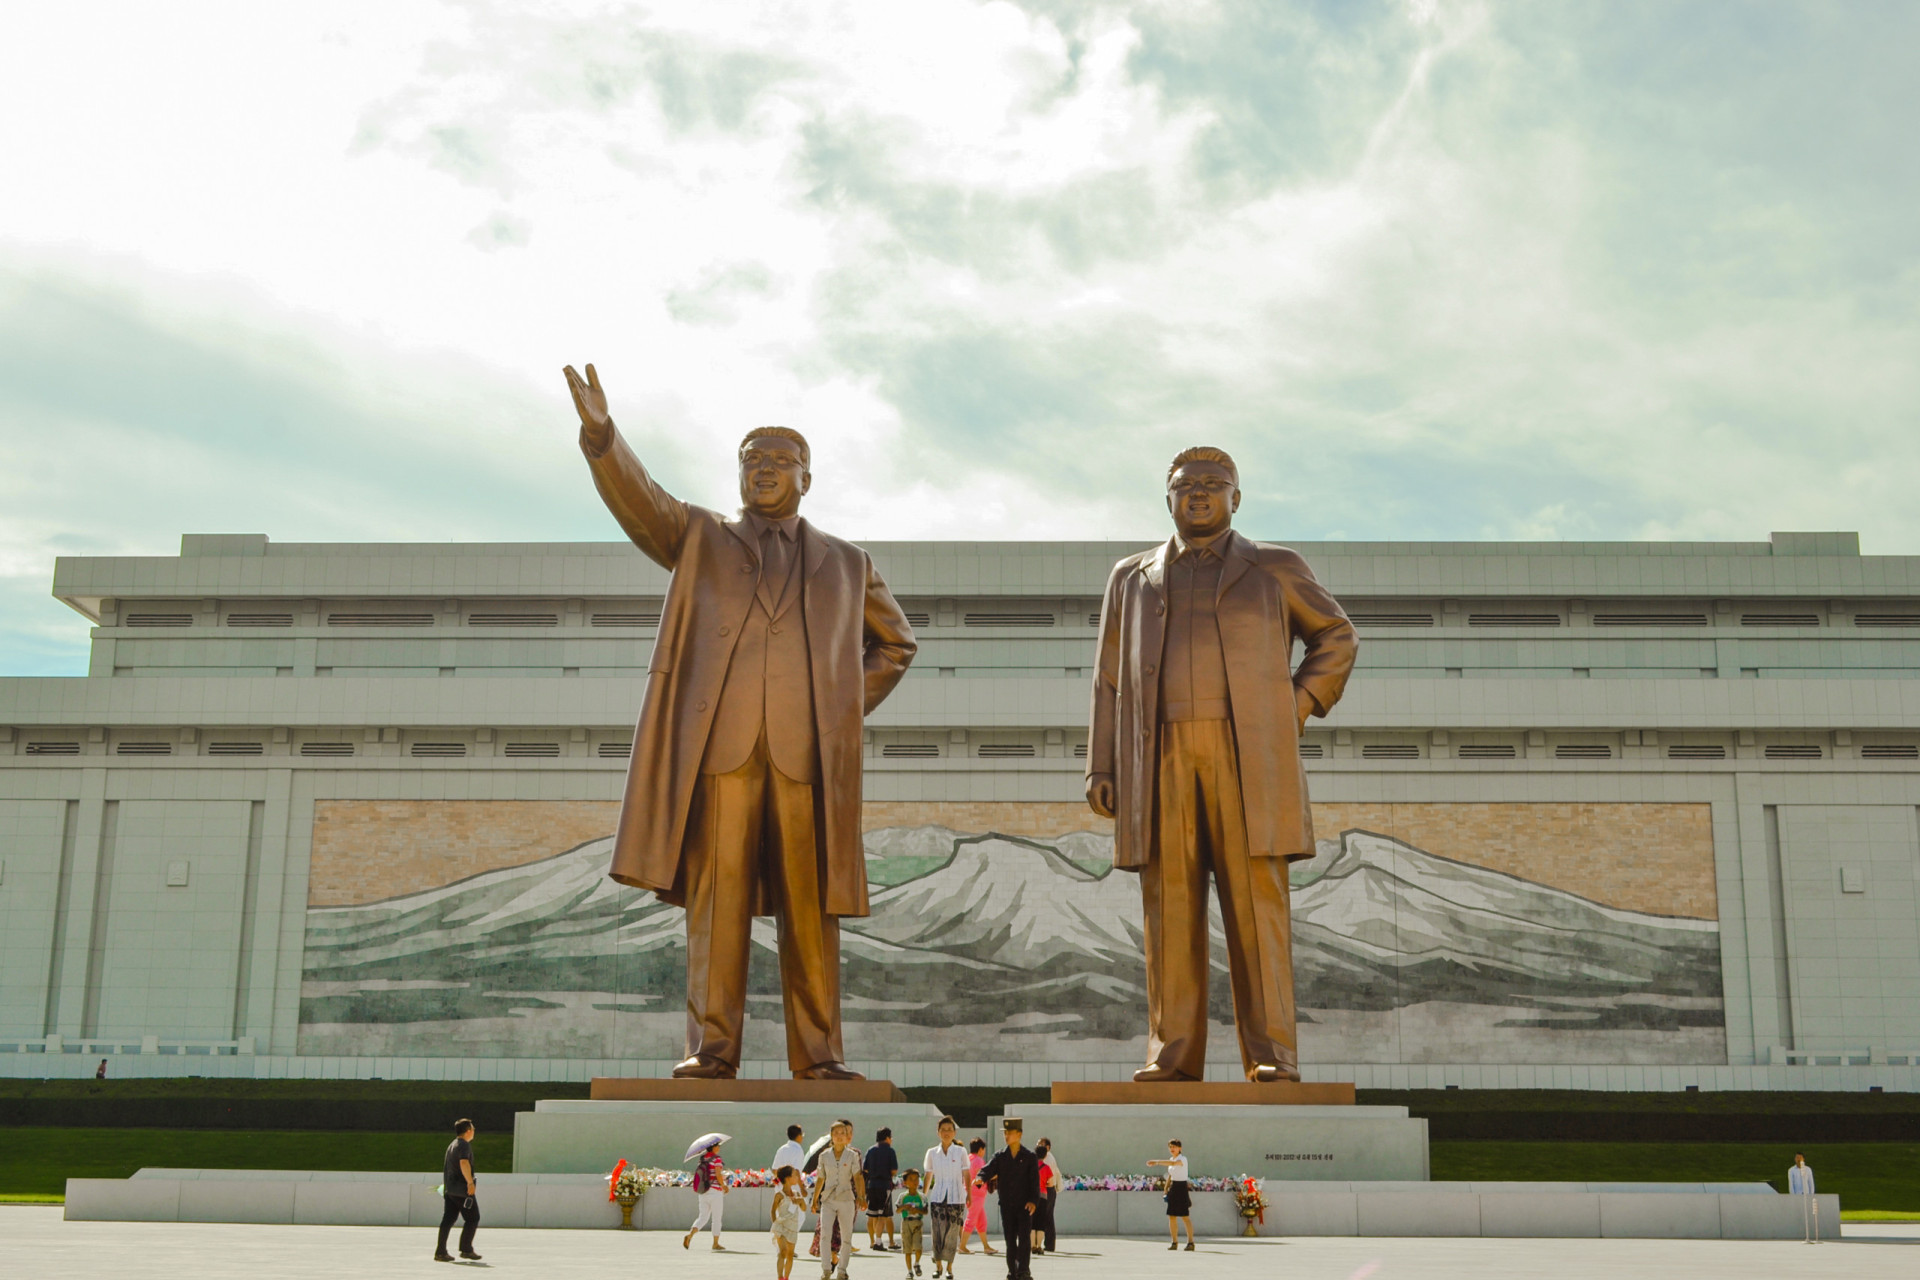 <p>Avec un indice de paix global de 2,848, la <a href="https://www.starsinsider.com/fr/lifestyle/687585/quelles-sont-les-differences-entre-la-coree-du-nord-et-du-sud" rel="noopener">Corée du Nord</a> est marquée par une histoire controversée en matière de droits de l'homme et est considérée comme l'un des pays les plus pauvres du monde. Cette note est principalement attribuée aux pénuries alimentaires et aux restrictions sévères à la liberté de circulation dans le pays.</p><p>Tu pourrais aussi aimer:<a href="https://www.starsinsider.com/n/338638?utm_source=msn.com&utm_medium=display&utm_campaign=referral_description&utm_content=700172"> Mère Nature a repris ses droits sur ces lieux étonnants</a></p>